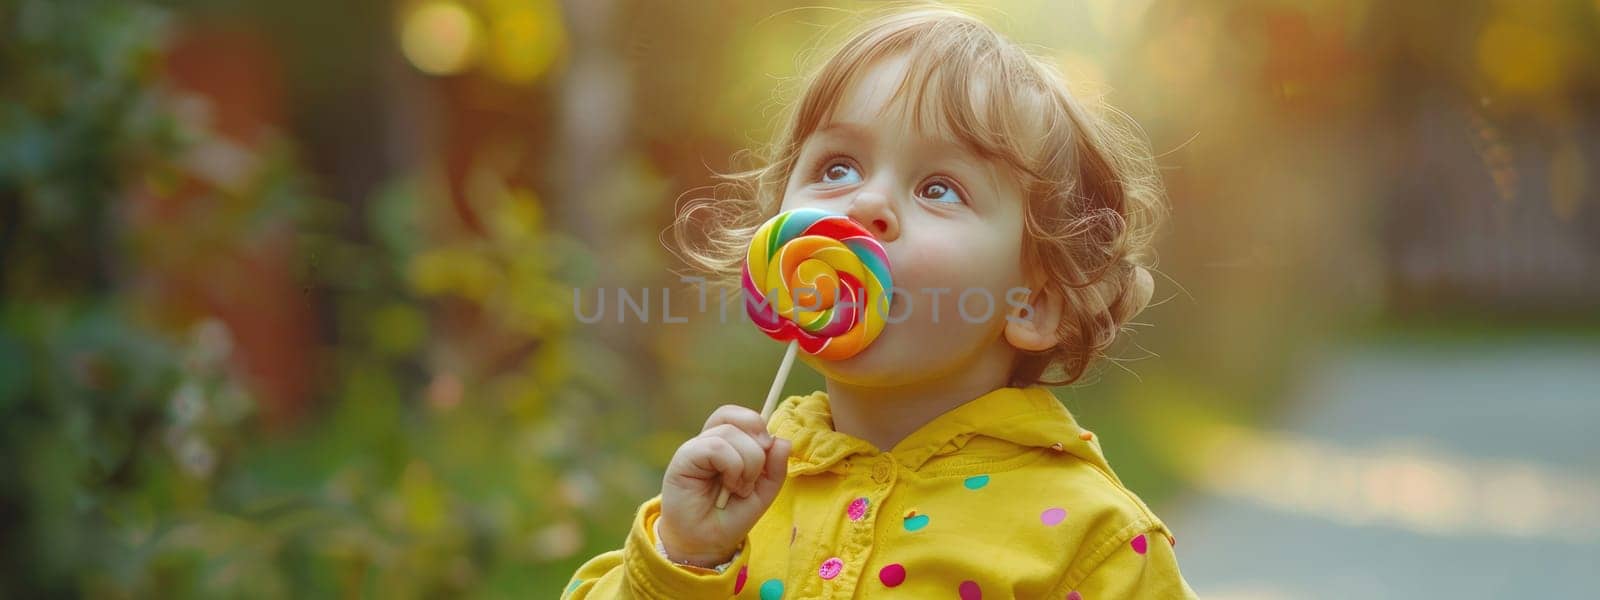 A child eats a lollipop. Selective focus. Kid.